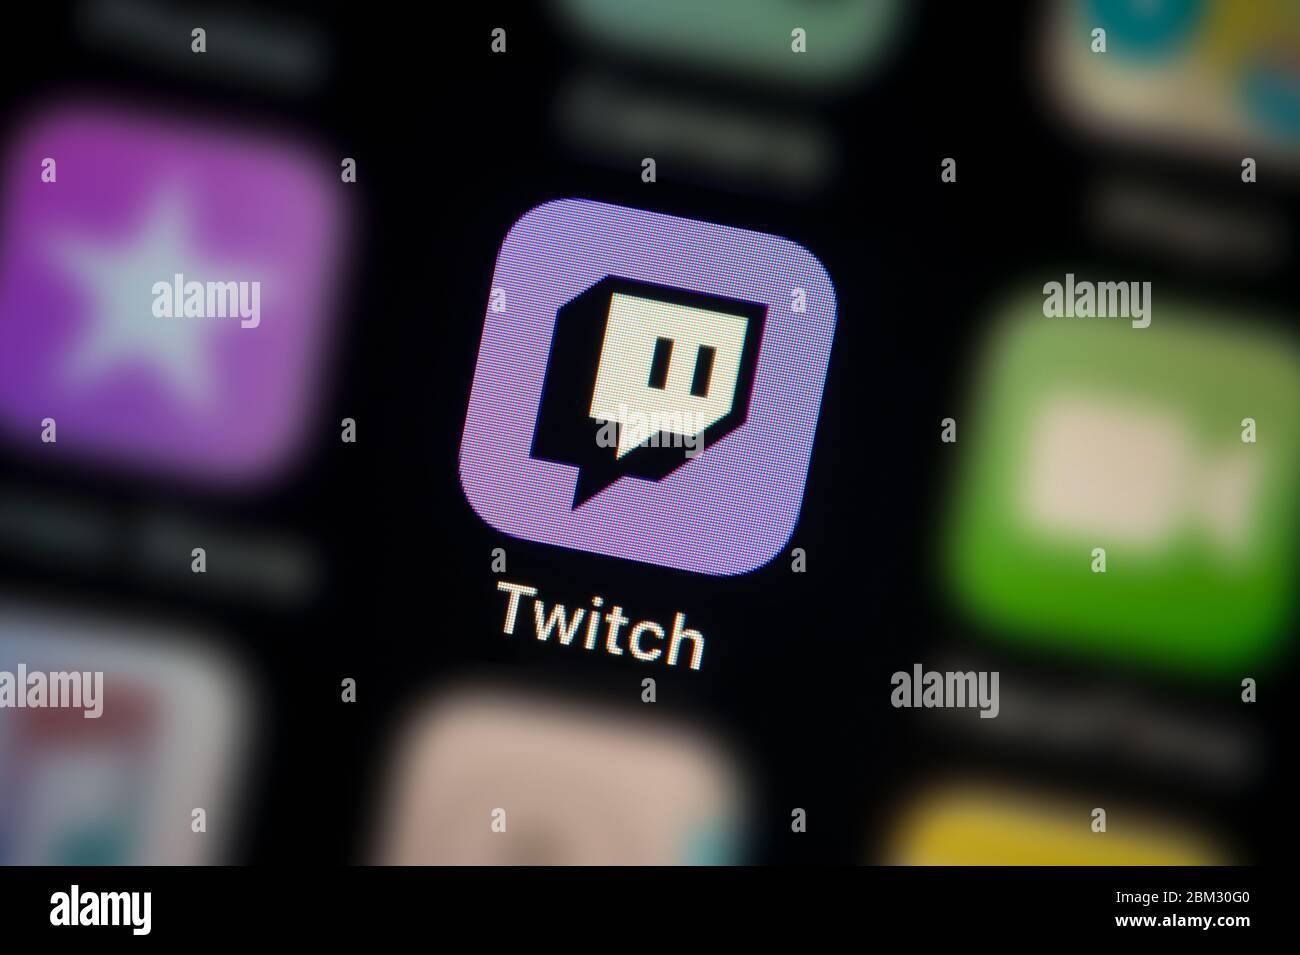 Une capture en gros plan de l'icône de l'application Twitch, comme illustré sur l'écran d'un smartphone (usage éditorial uniquement) Banque D'Images